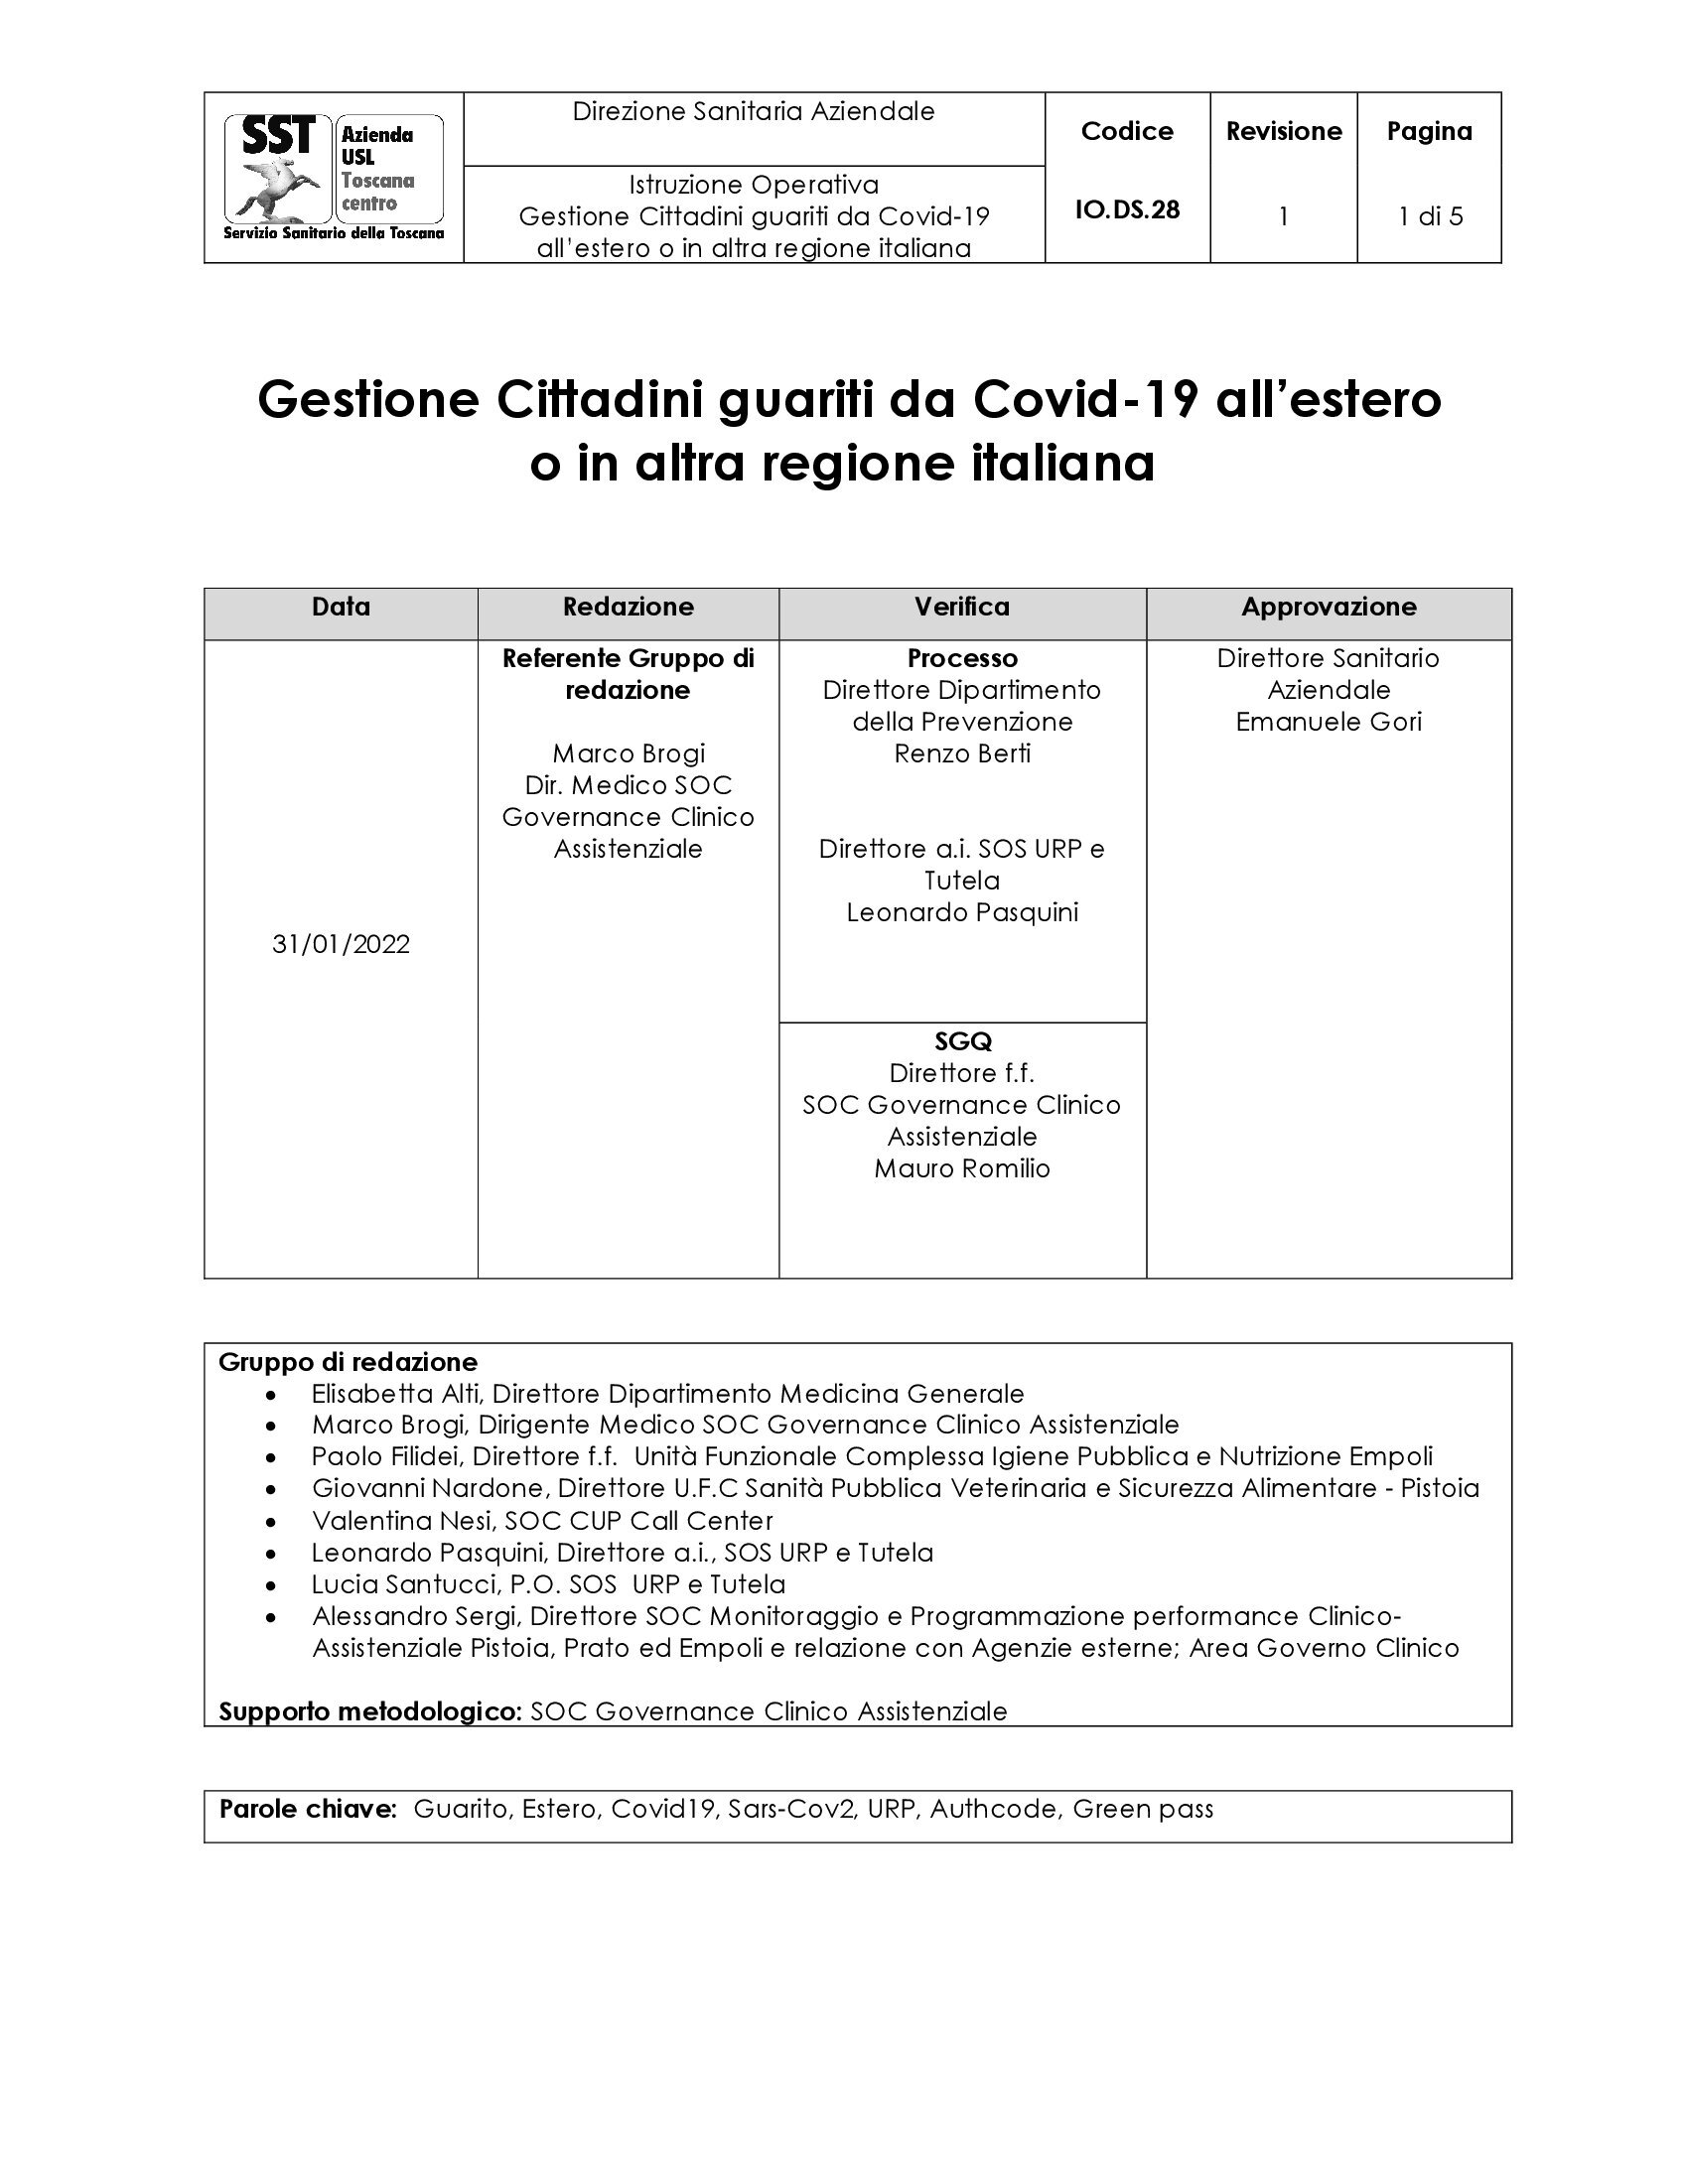 IO.DS.28 rev. 1: Gestione Cittadini guariti da Covid-19 all’estero od in altra regione italiana